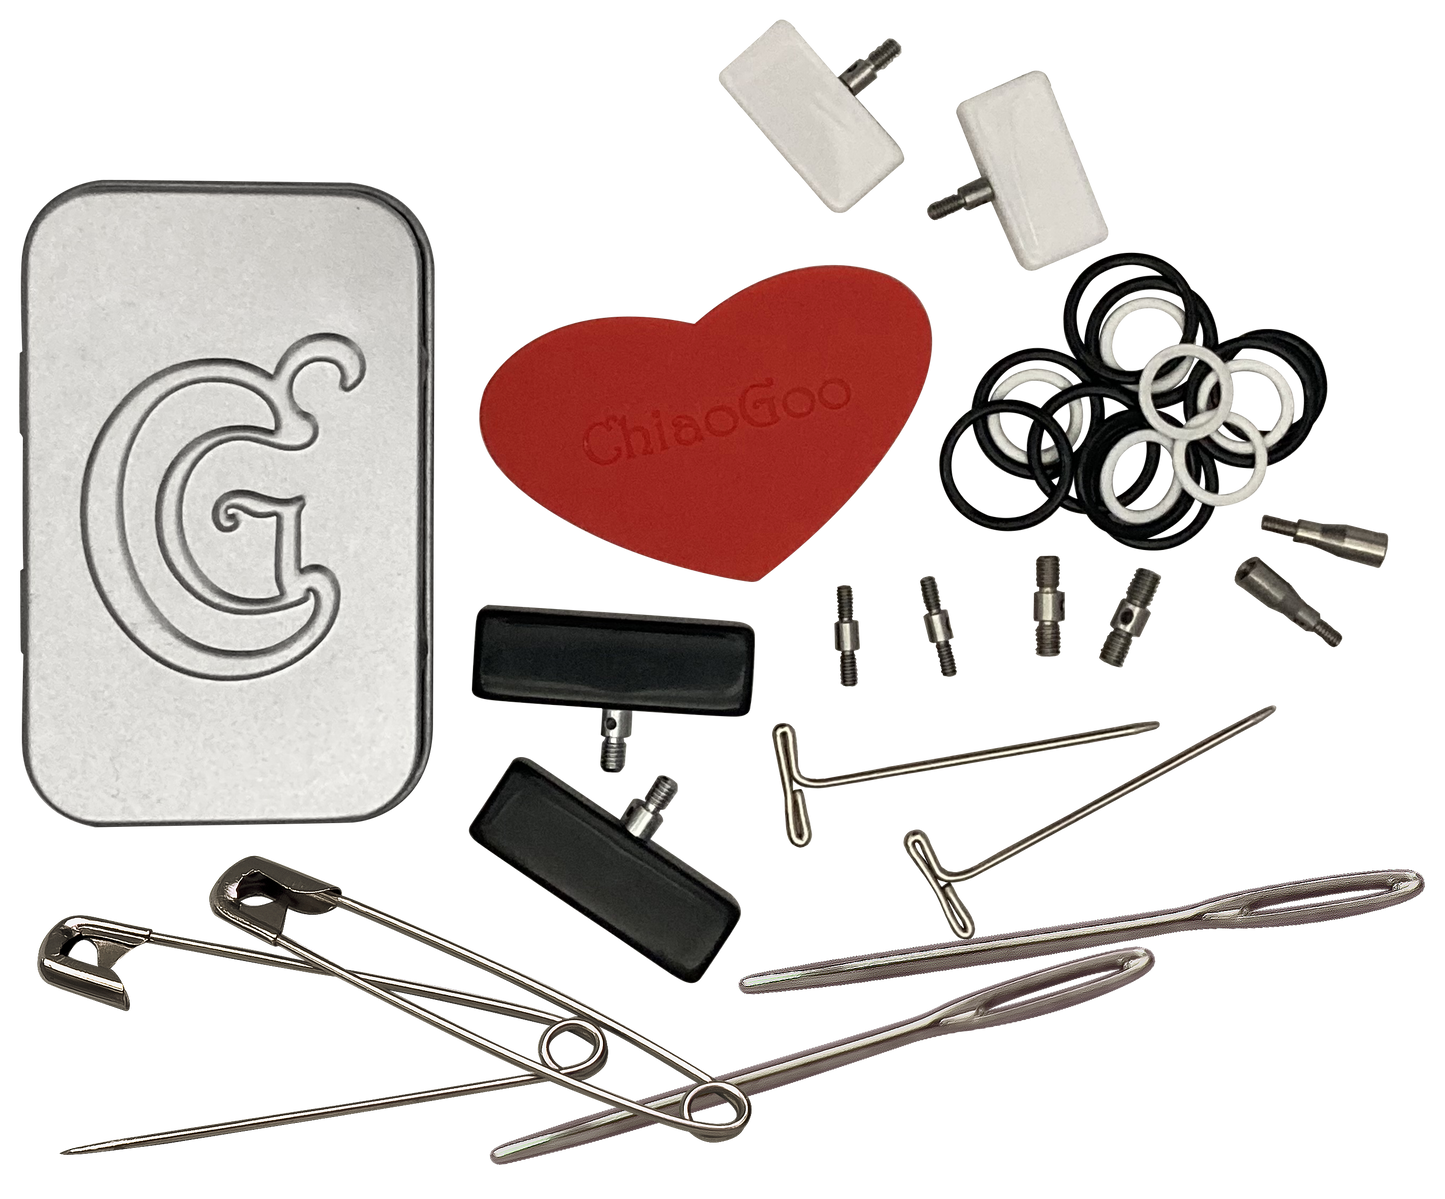 ChiaGoo Mini Tools Accessory Kit